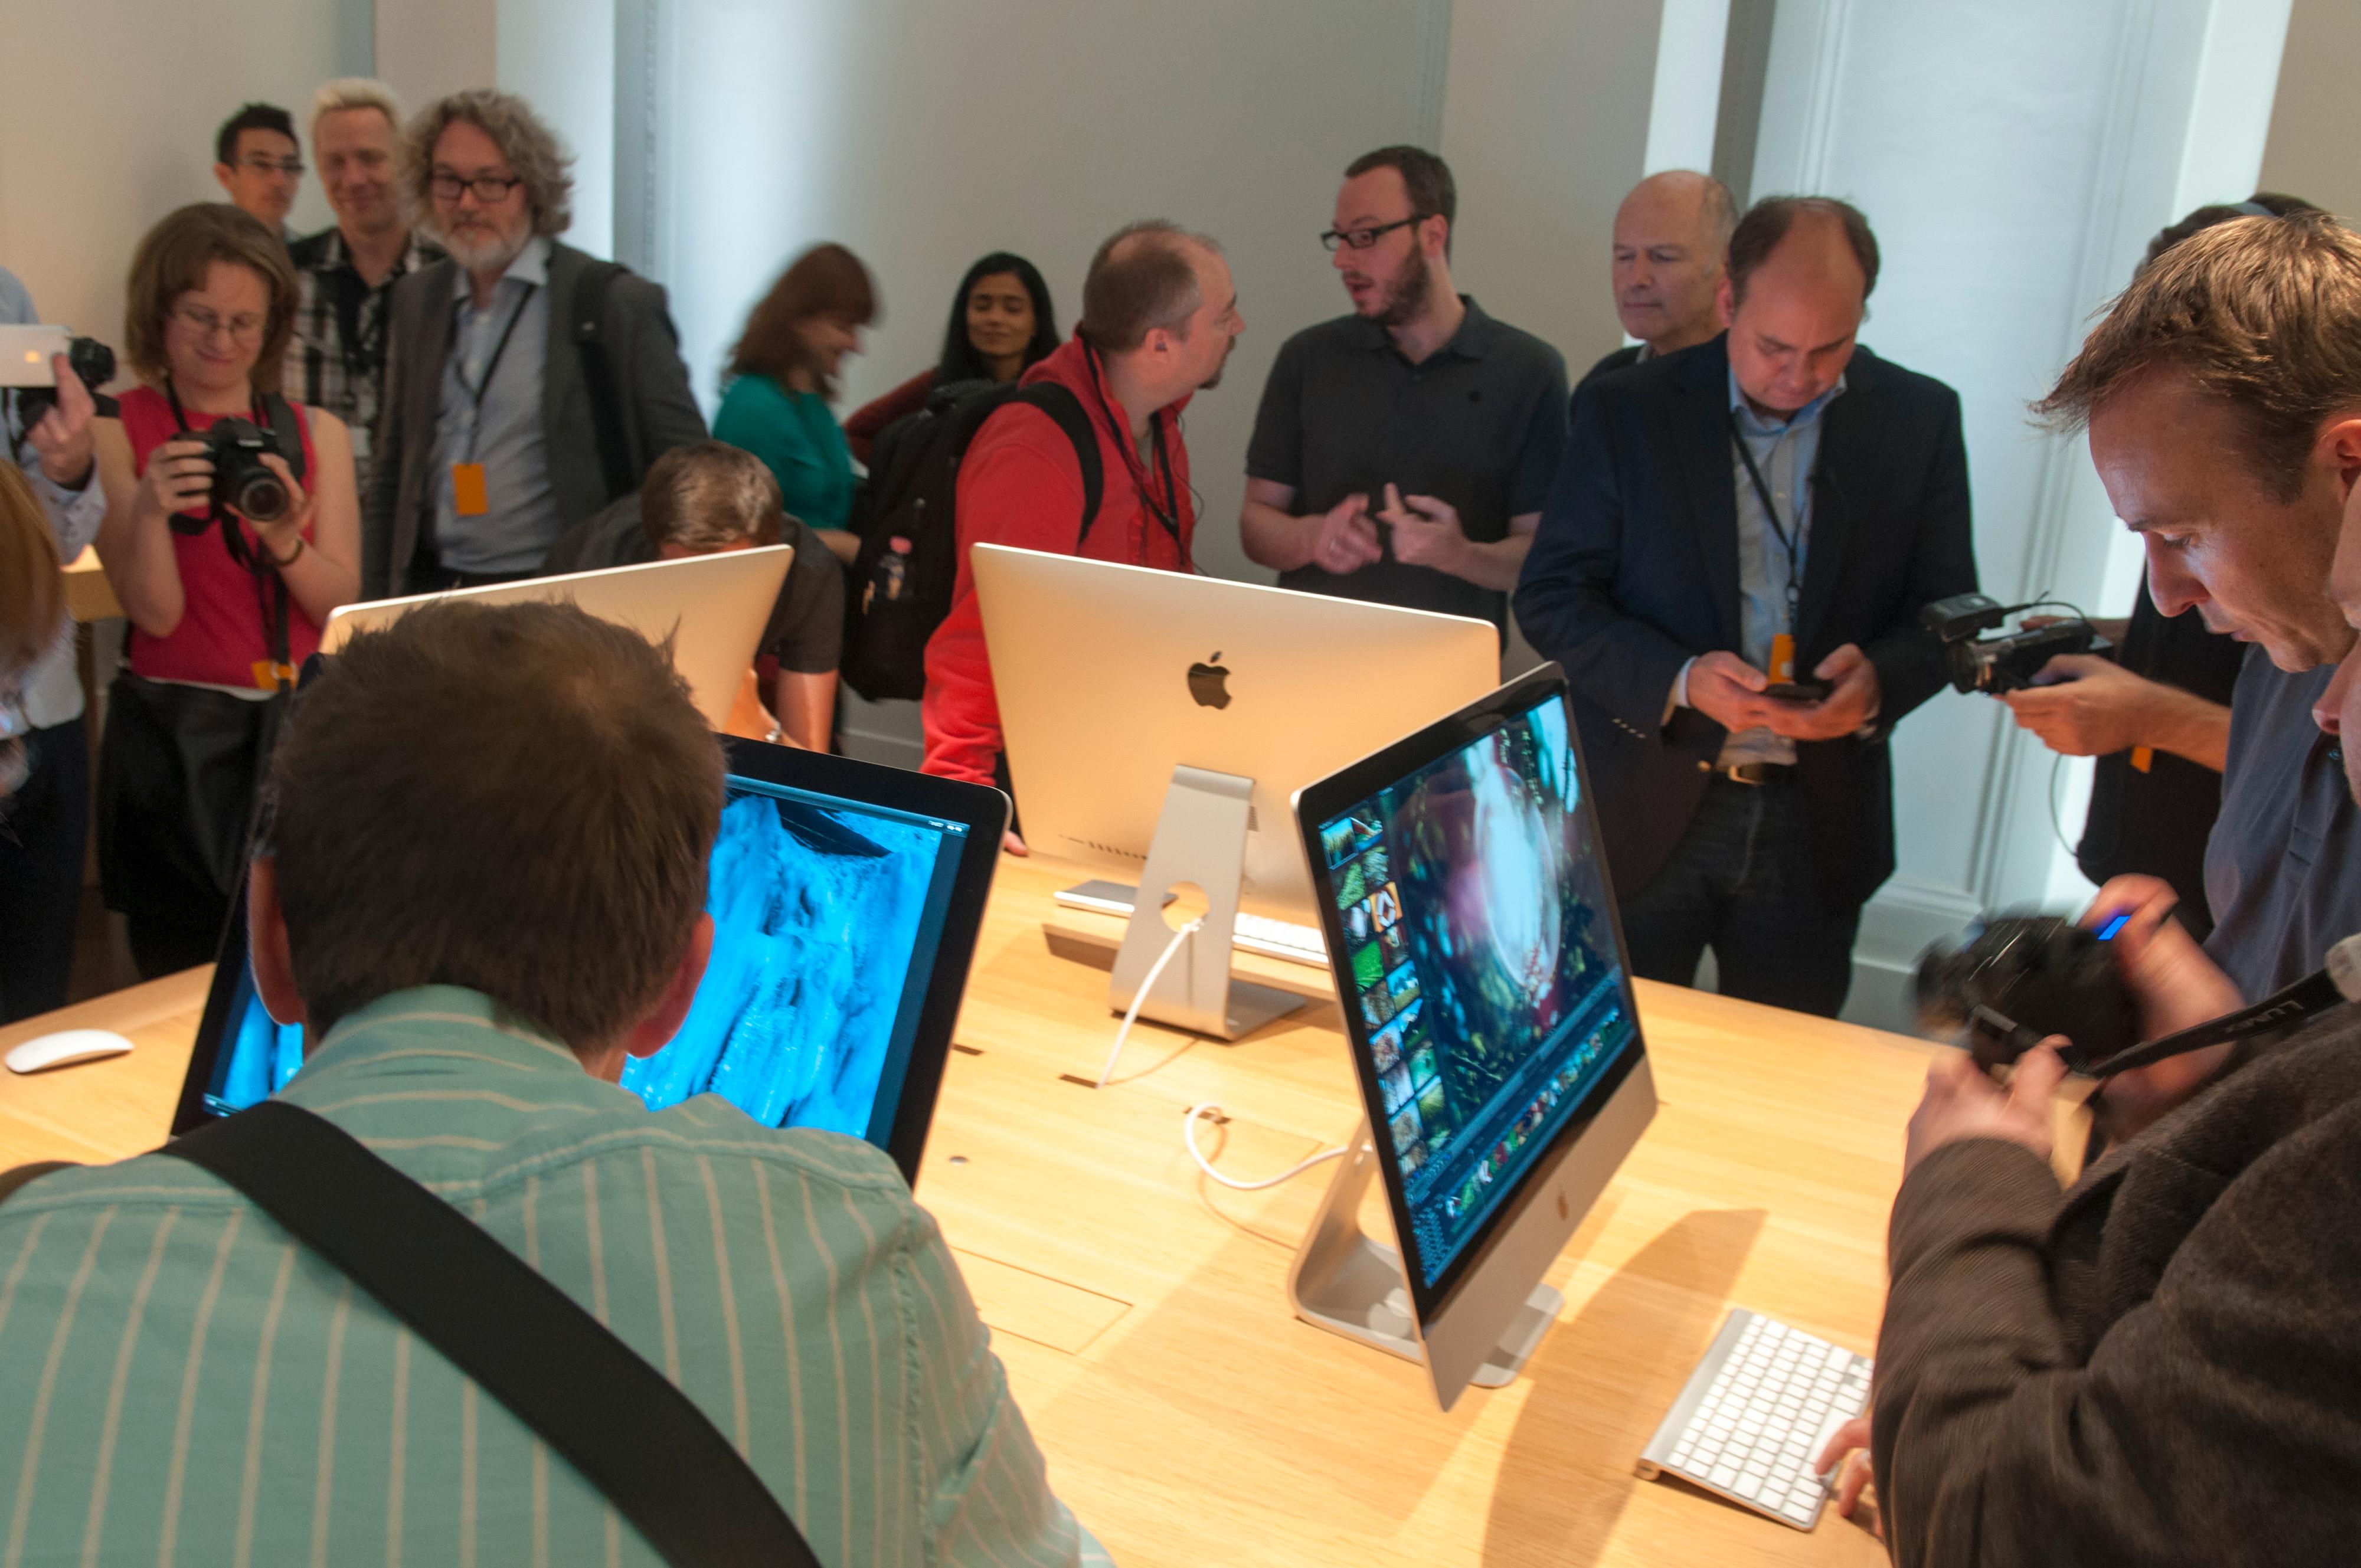 Interessen for Apples nye alt-i-ett-maskin var stor.Foto: Finn Jarle Kvalheim, Tek.no